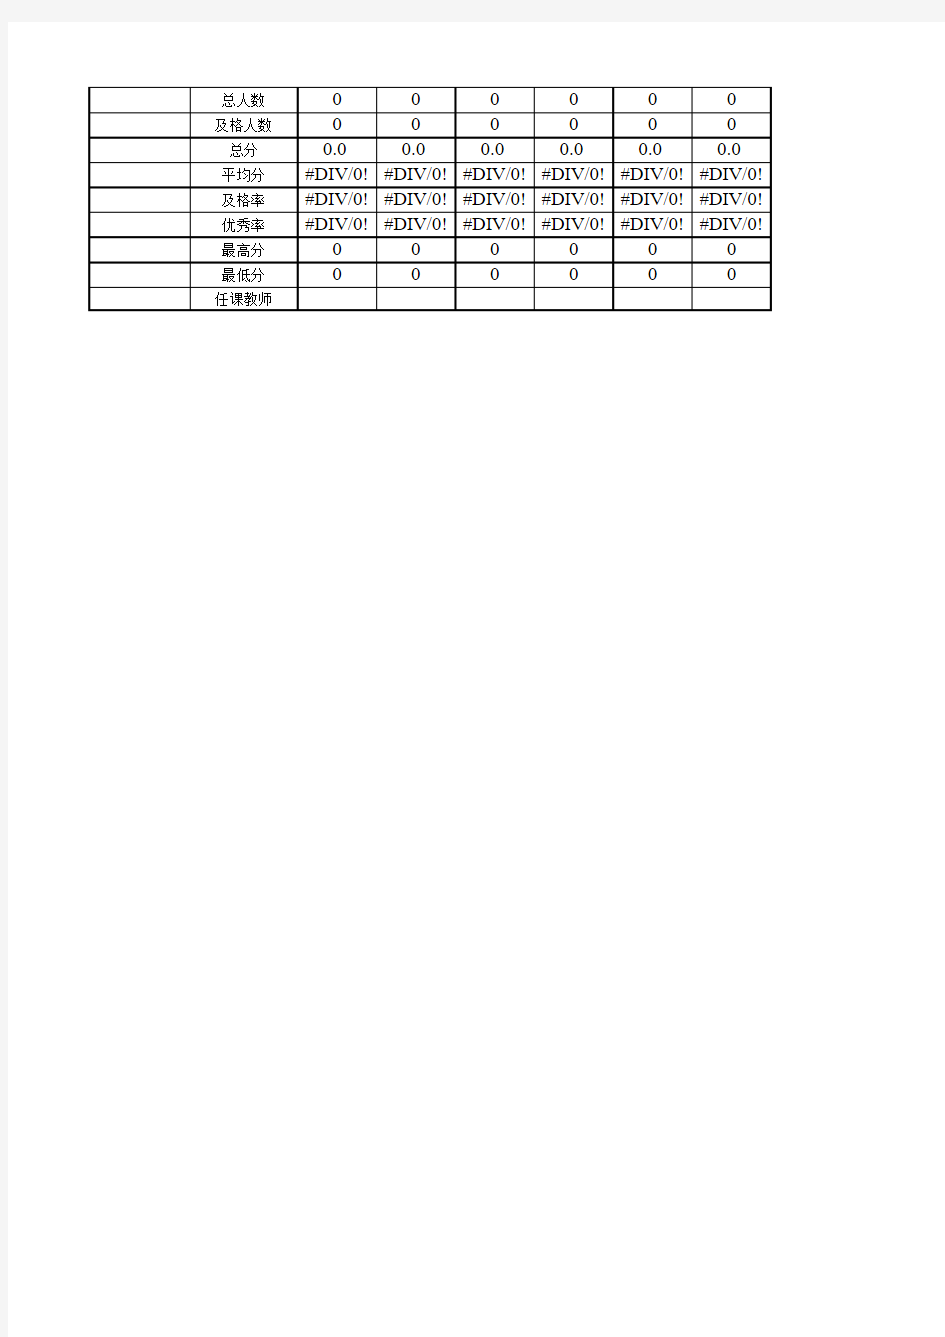 学生期末考试成绩表(带统计格式)